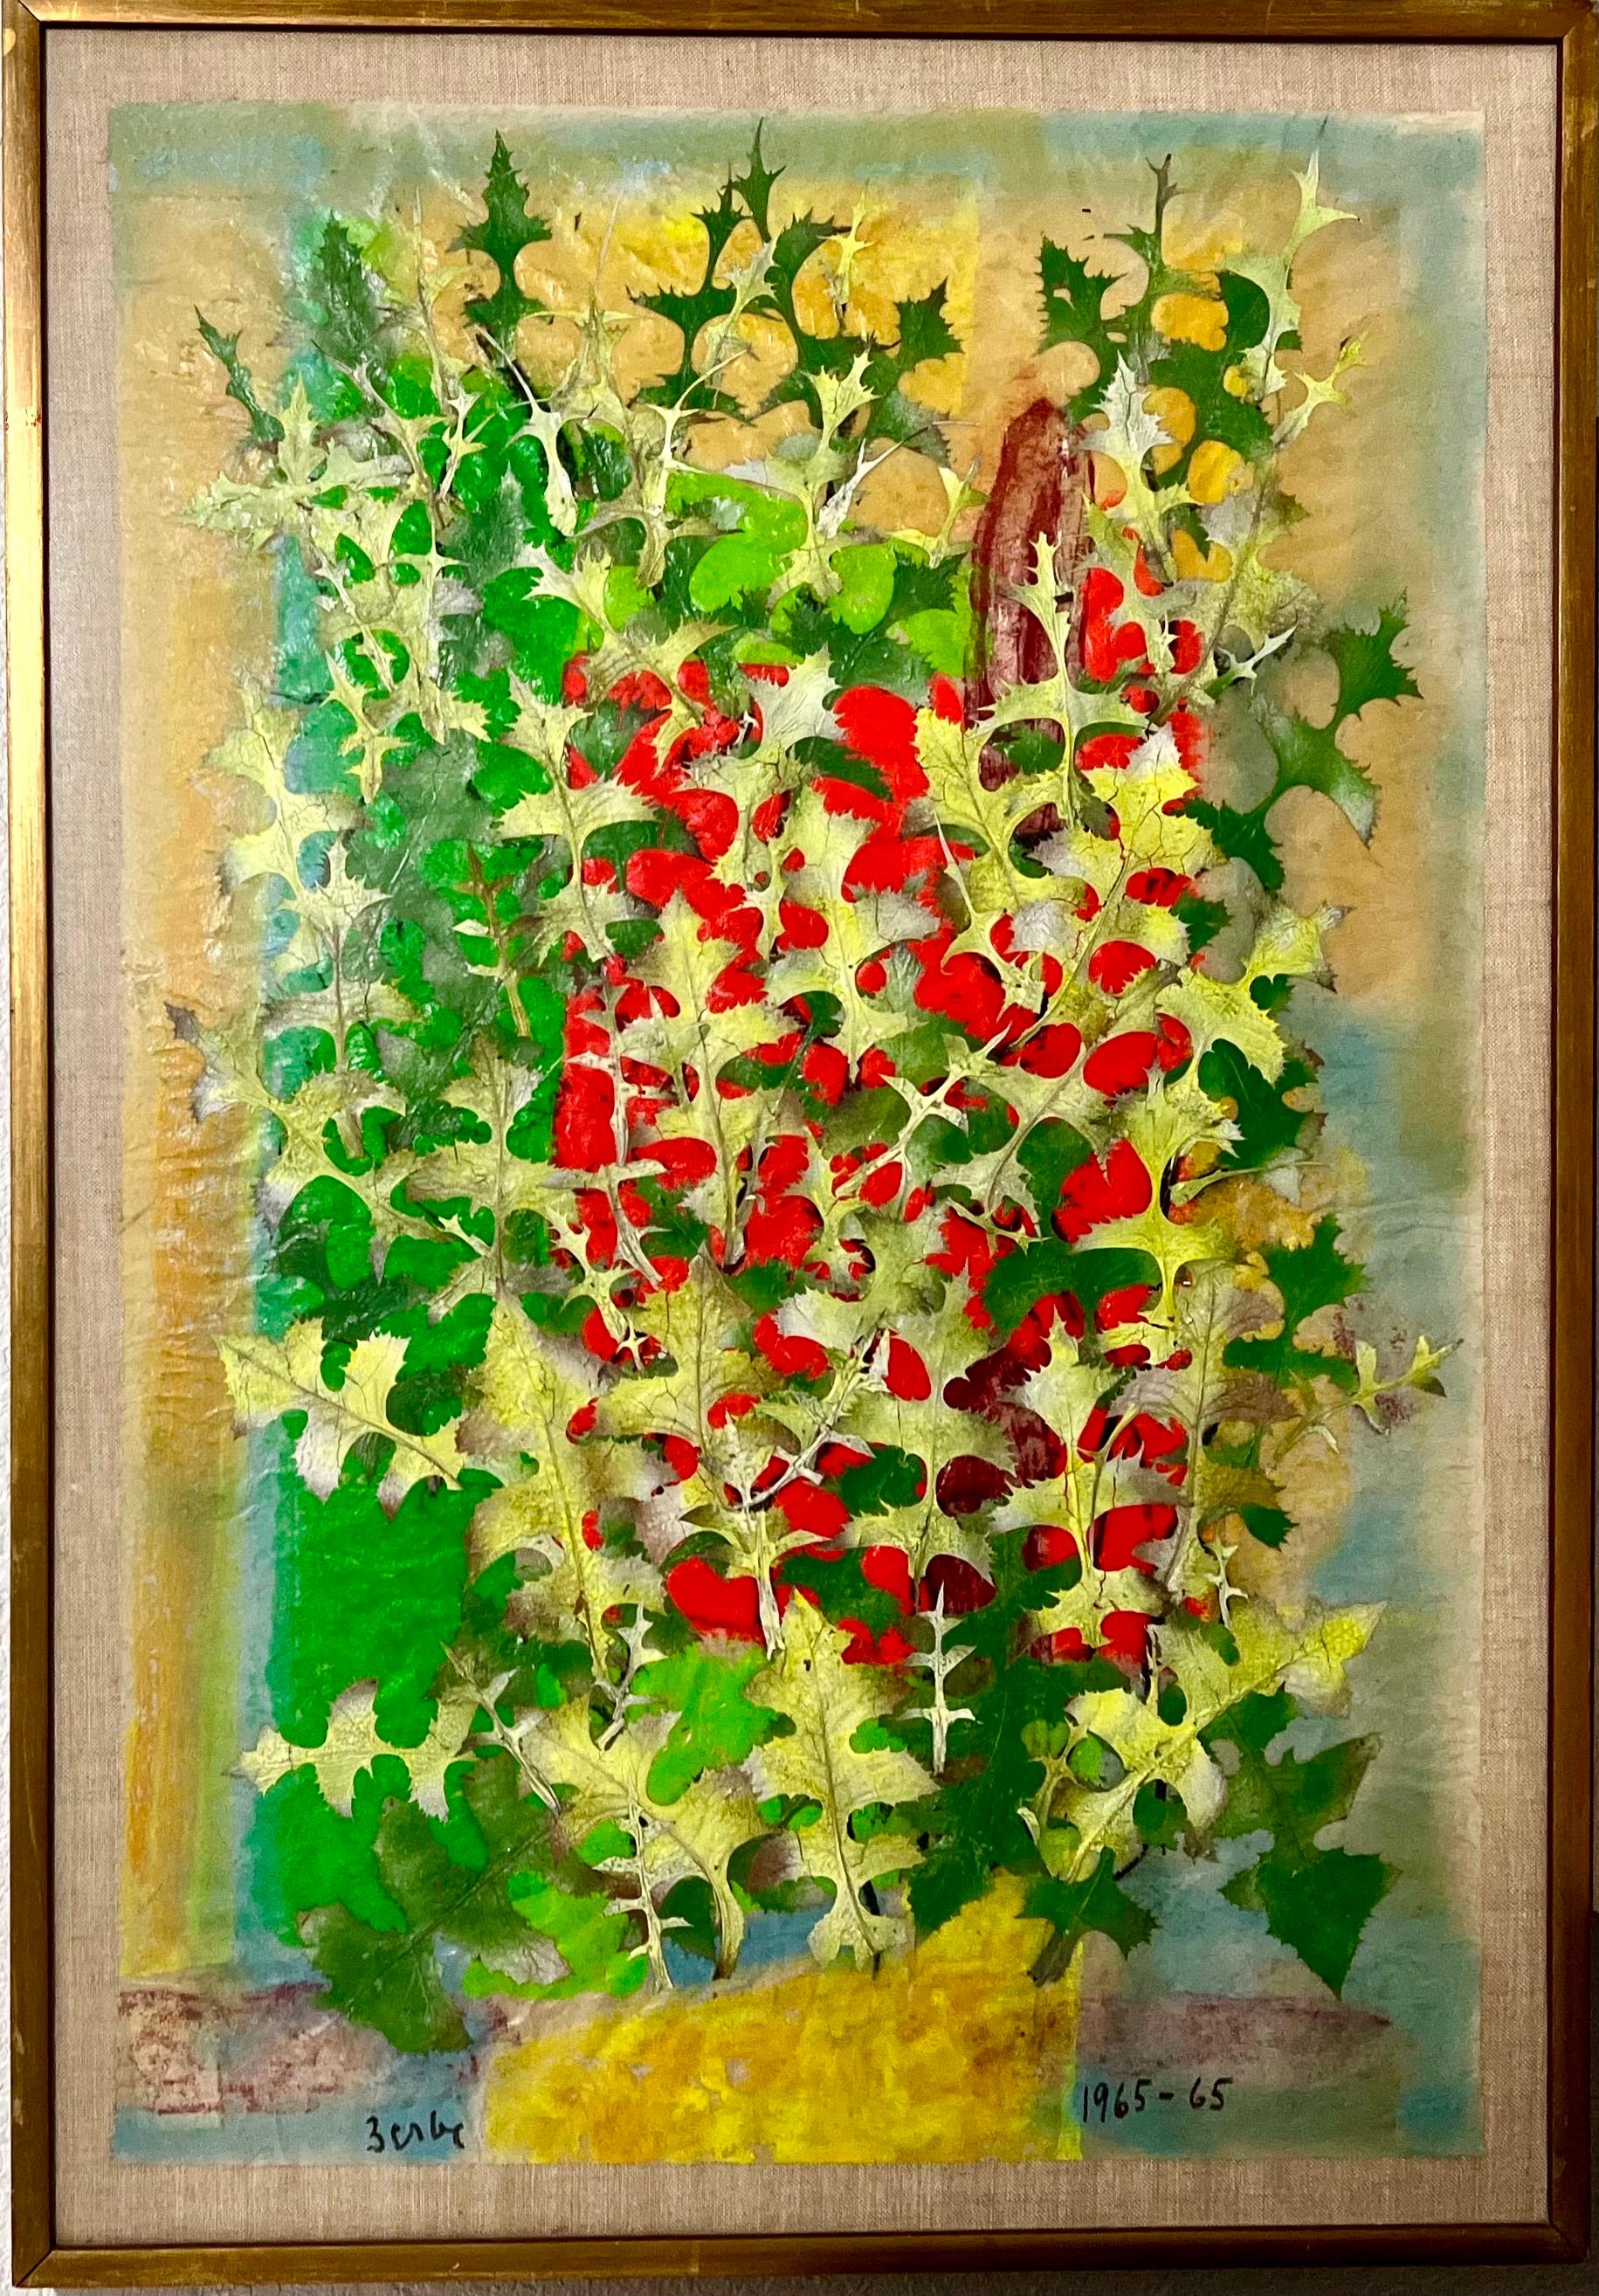 Karl Zerbe (1903-1972) 
Eine Mixed-Media-Malerei-Collage aus neonfarbenen Blättern auf Leinwand mit Pergamentunterlage. 
Handsigniert "Zerbe" unten links und datiert unten rechts 1965-65. 
Abmessungen: Collage: 36 Zoll hoch x 24 Zoll breit. Rahmen: